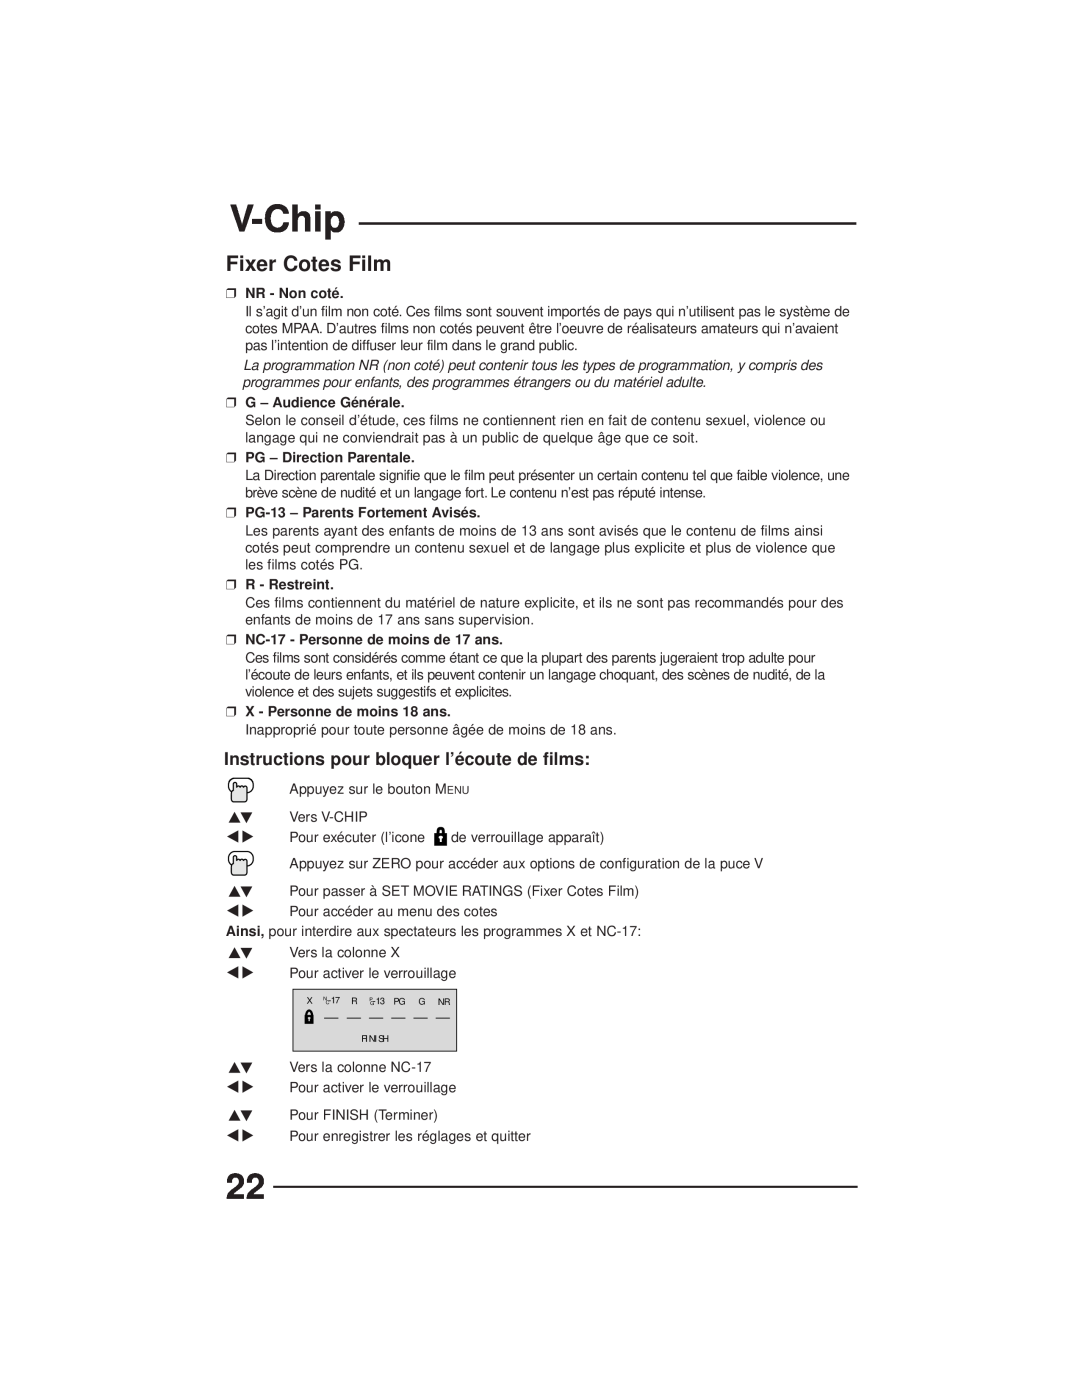 JVC AV-27GFH Fixer Cotes Film, V-Chip, Instructions pour bloquer l’écoute de films, NR - Non coté, G - Audience Générale 